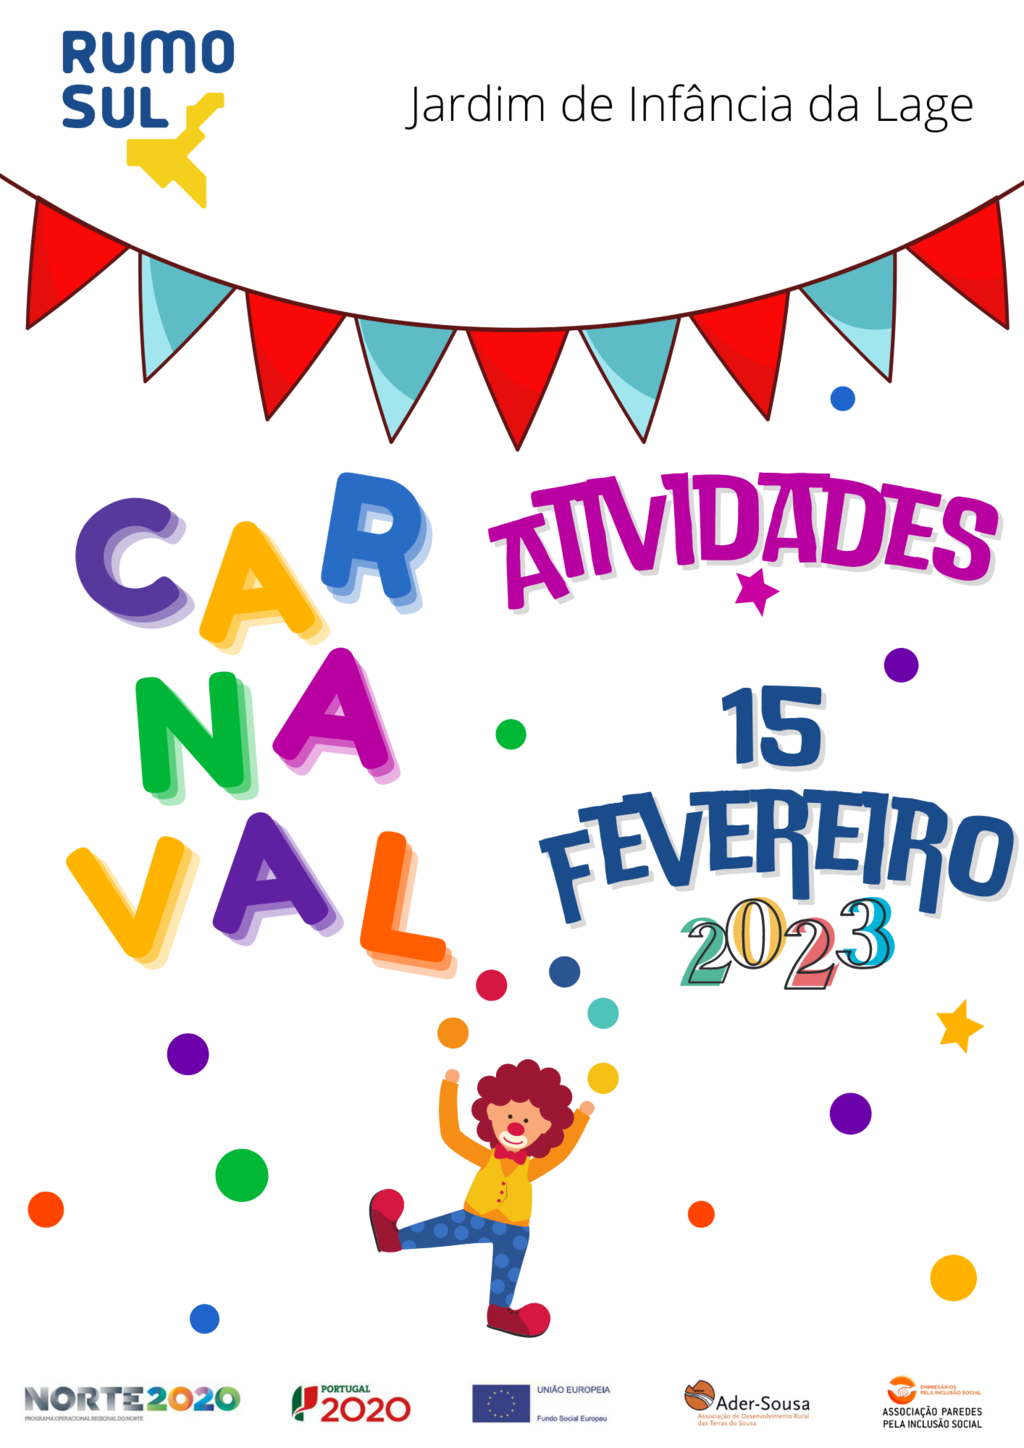 Atividade do Dia de Carnaval no Jardim de Infância da Lage